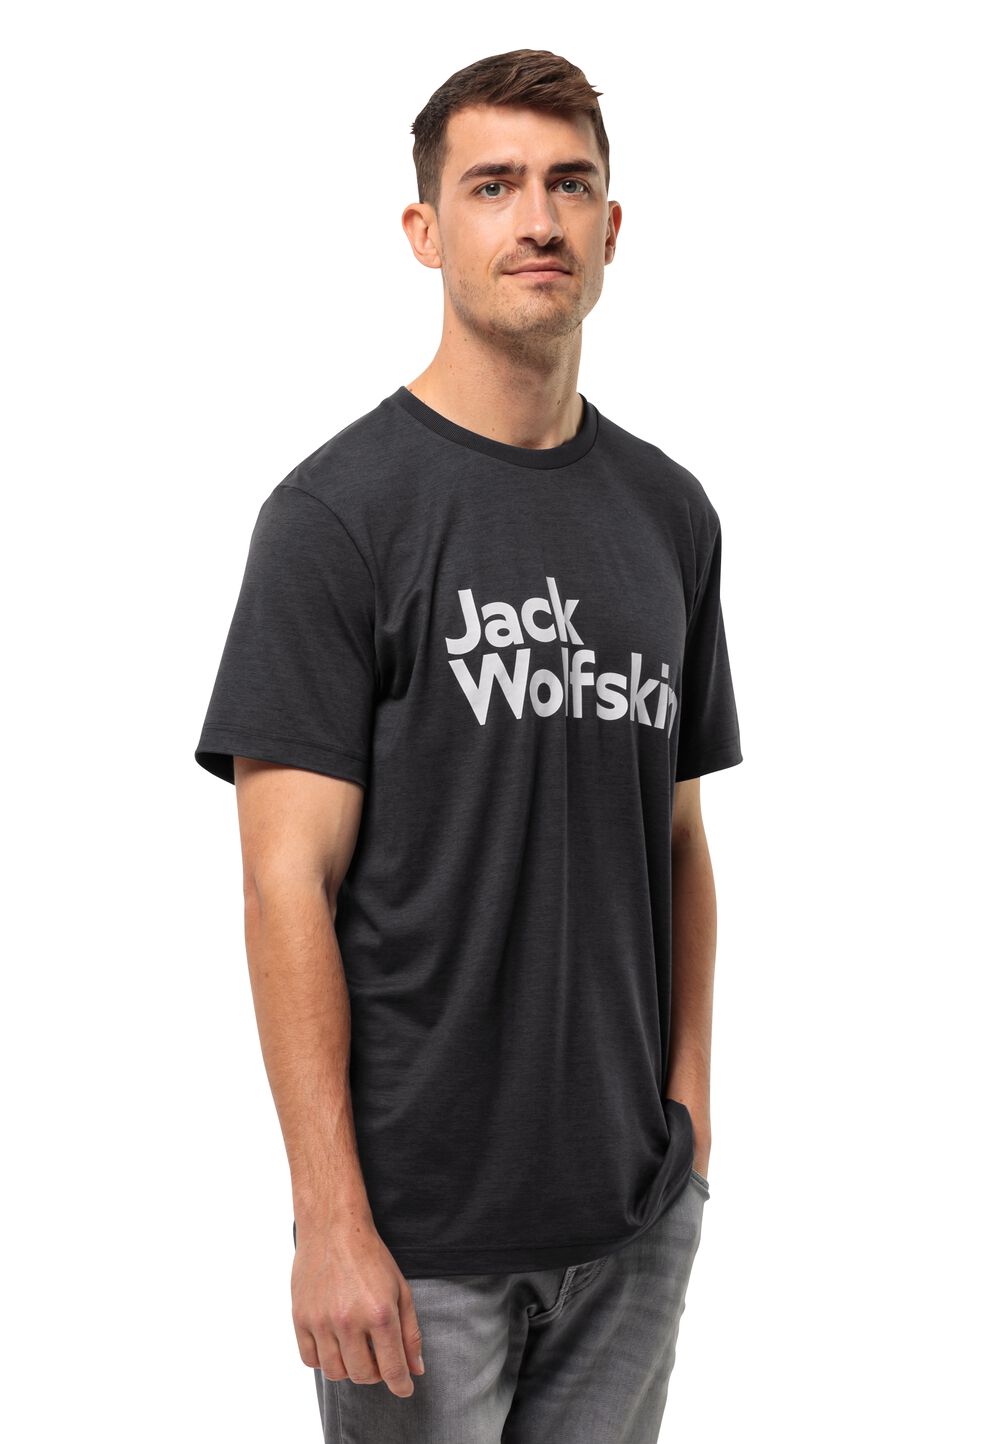 Jack Wolfskin Funktionsshirt Herren Brand T-Shirt Men XL schwarz black von Jack Wolfskin